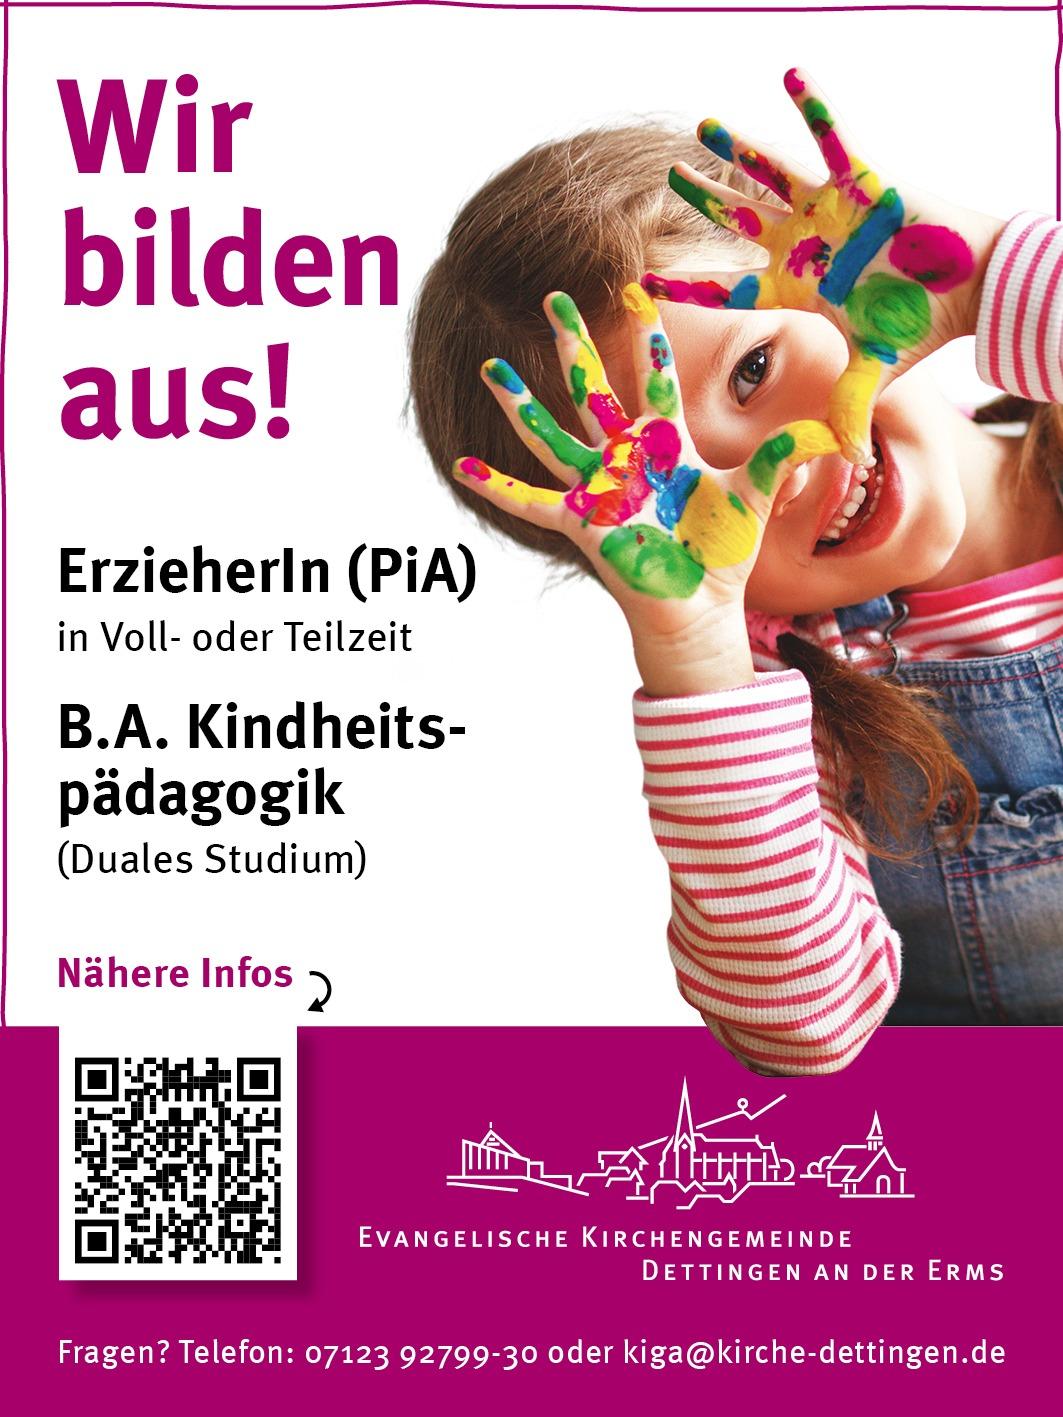 Praxisintegrierte Ausbildung zum/zur Erzieher:in (PiA) | Ev. Kirchengemeinde Dettingen, Dettingen